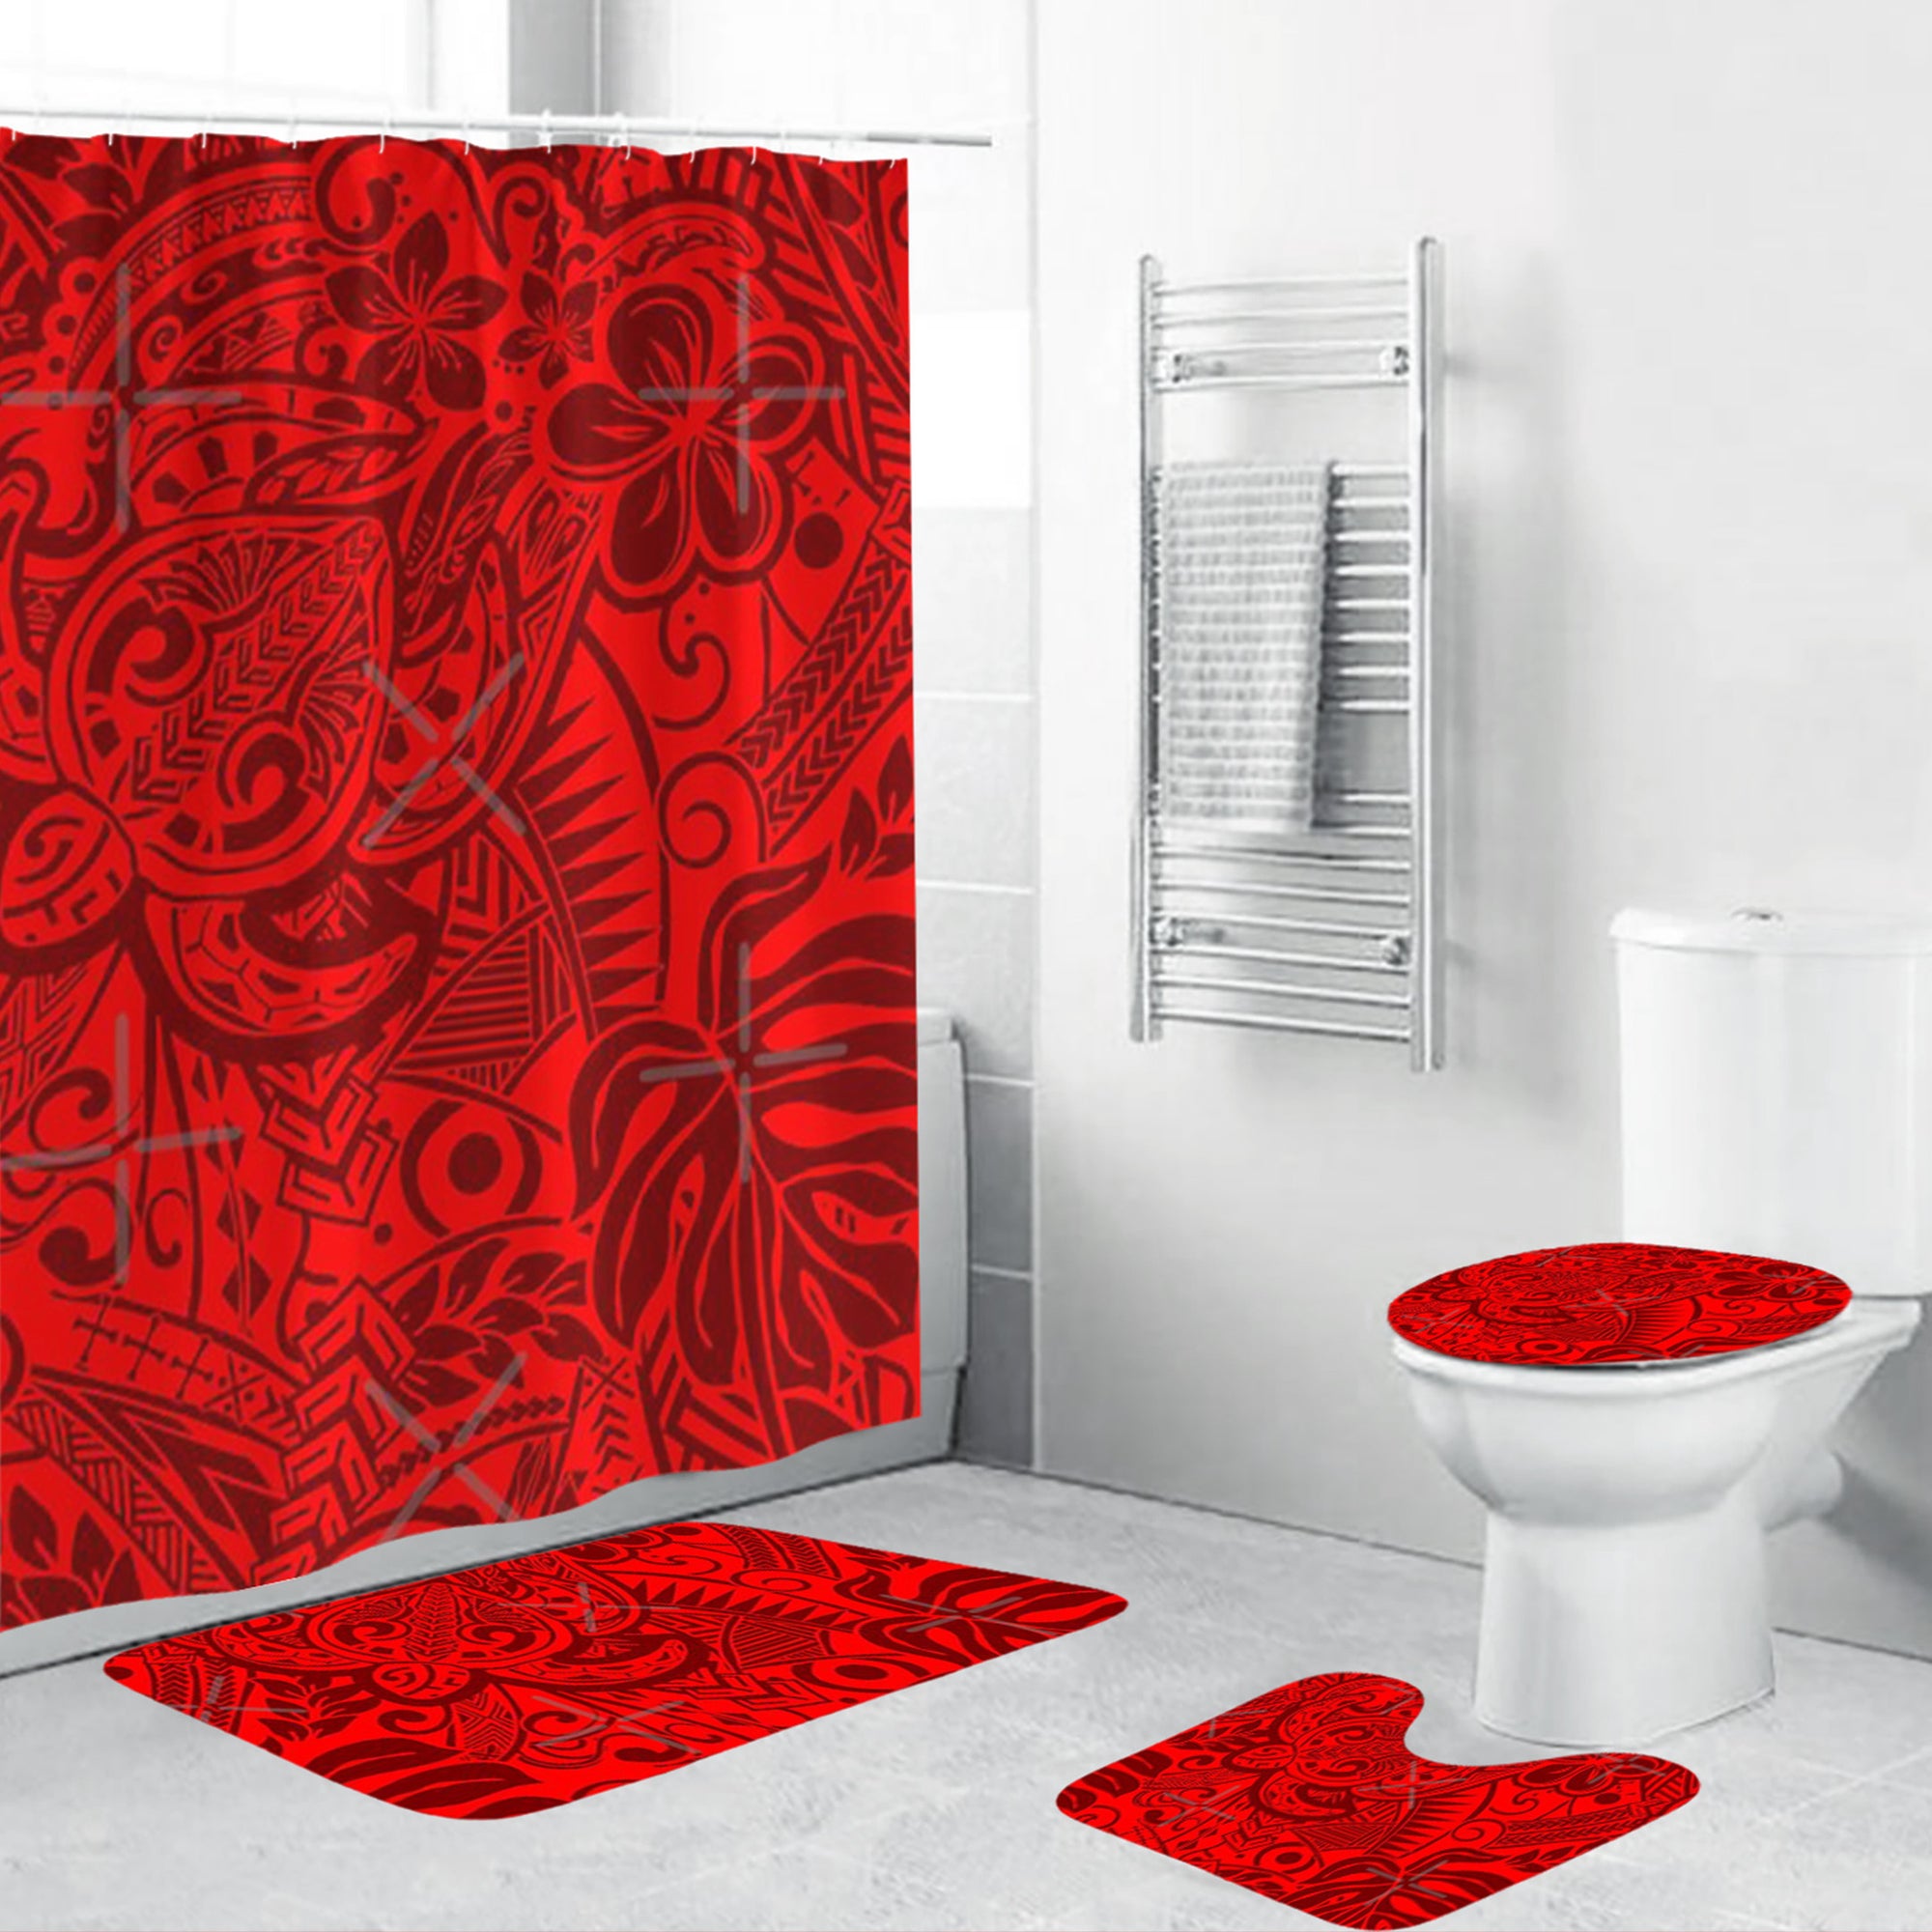 Polynesian Home Set - Polynesian Red Tribal Turtle Bathroom Set LT10 Red - Polynesian Pride